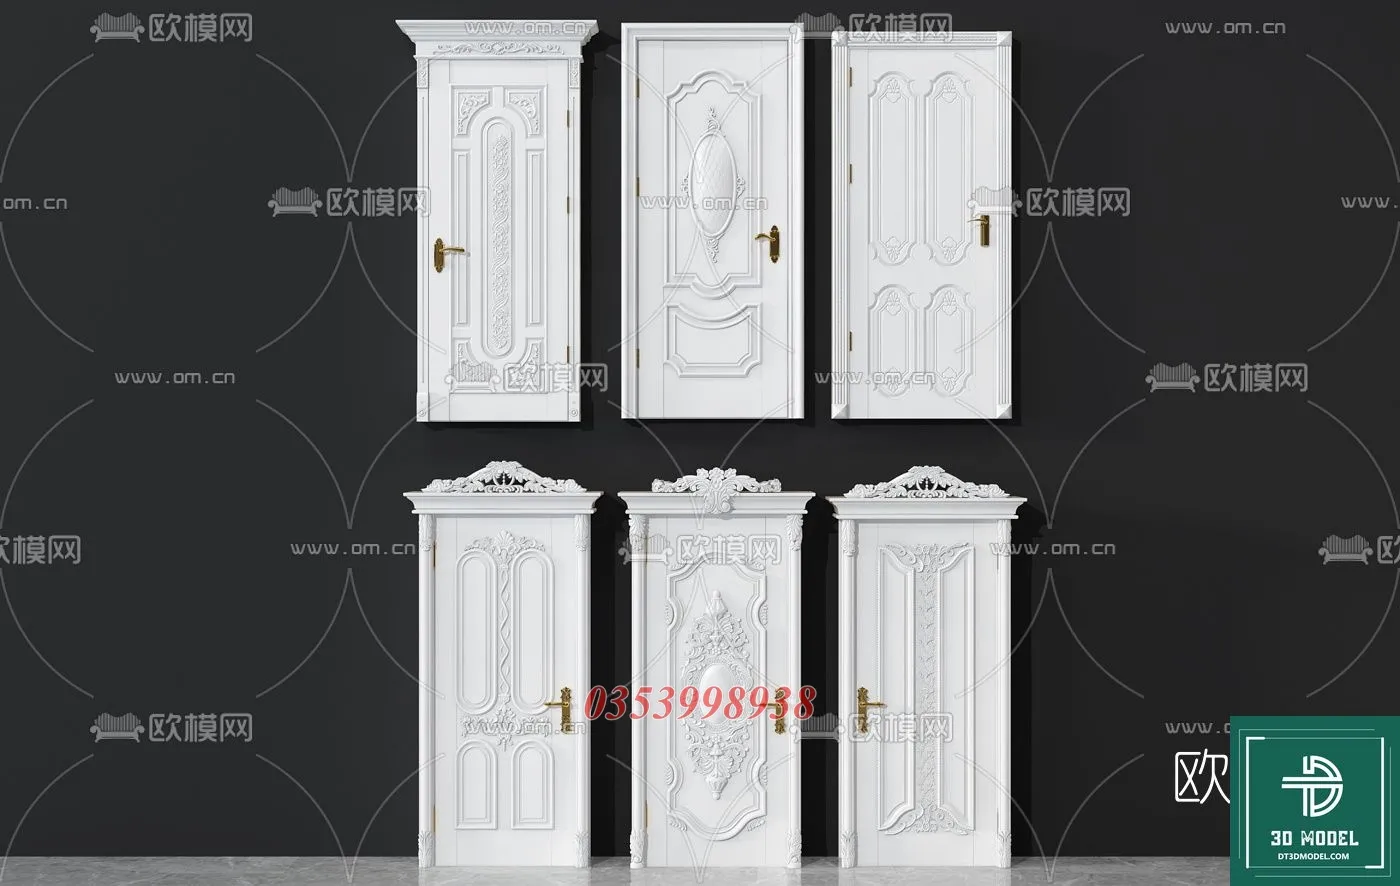 CLASSIC DOOR – 3dsmax MODELS – 029